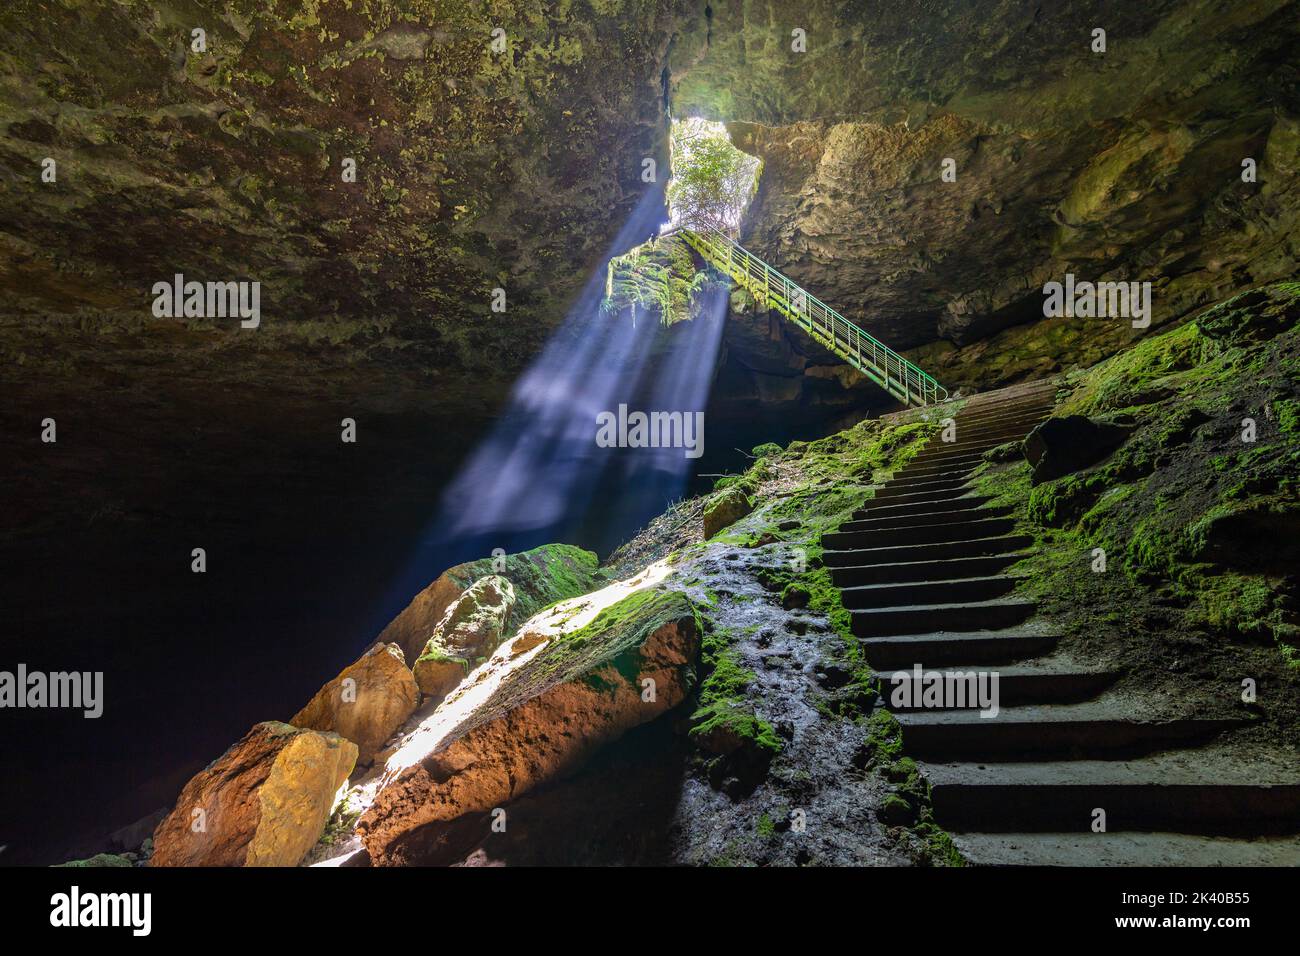 Grotte de Stalbitsata signifiant l'escalier, avec un trou sur le plafond. Entre le ciel et l'enfer concept. Il est situé près de la ville de Lovech en Bulgarie. Banque D'Images